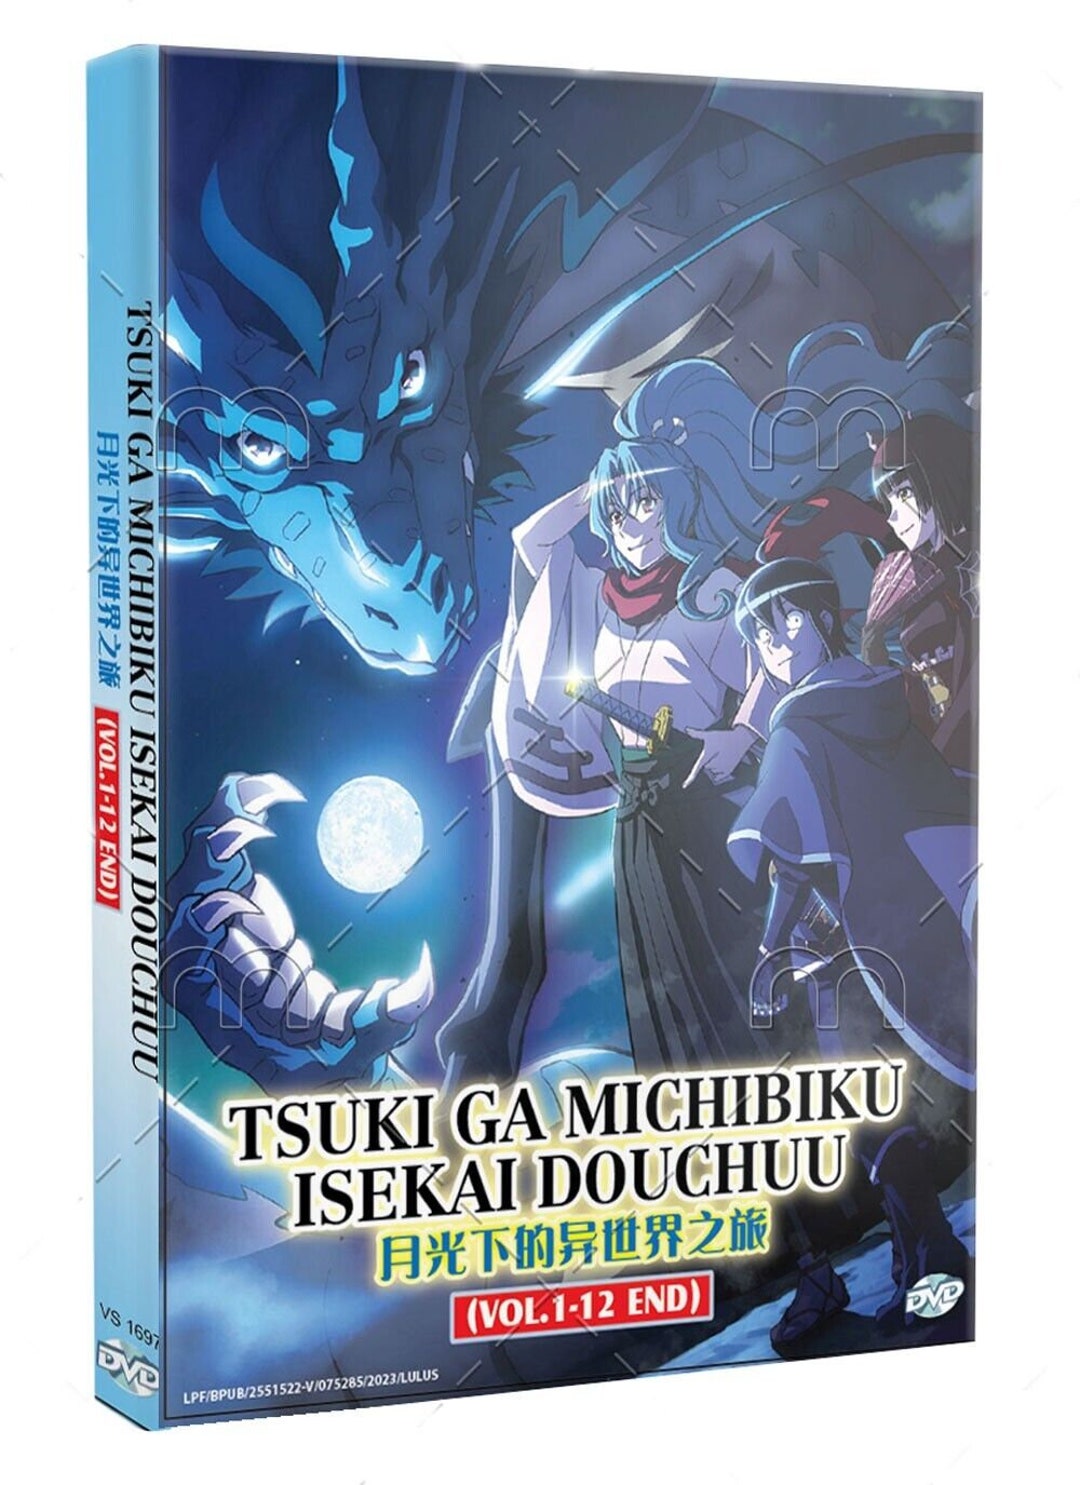 Tsukimichi: Moonlit Fantasy (Tsuki ga Michibiku Isekai Douchuu) 16